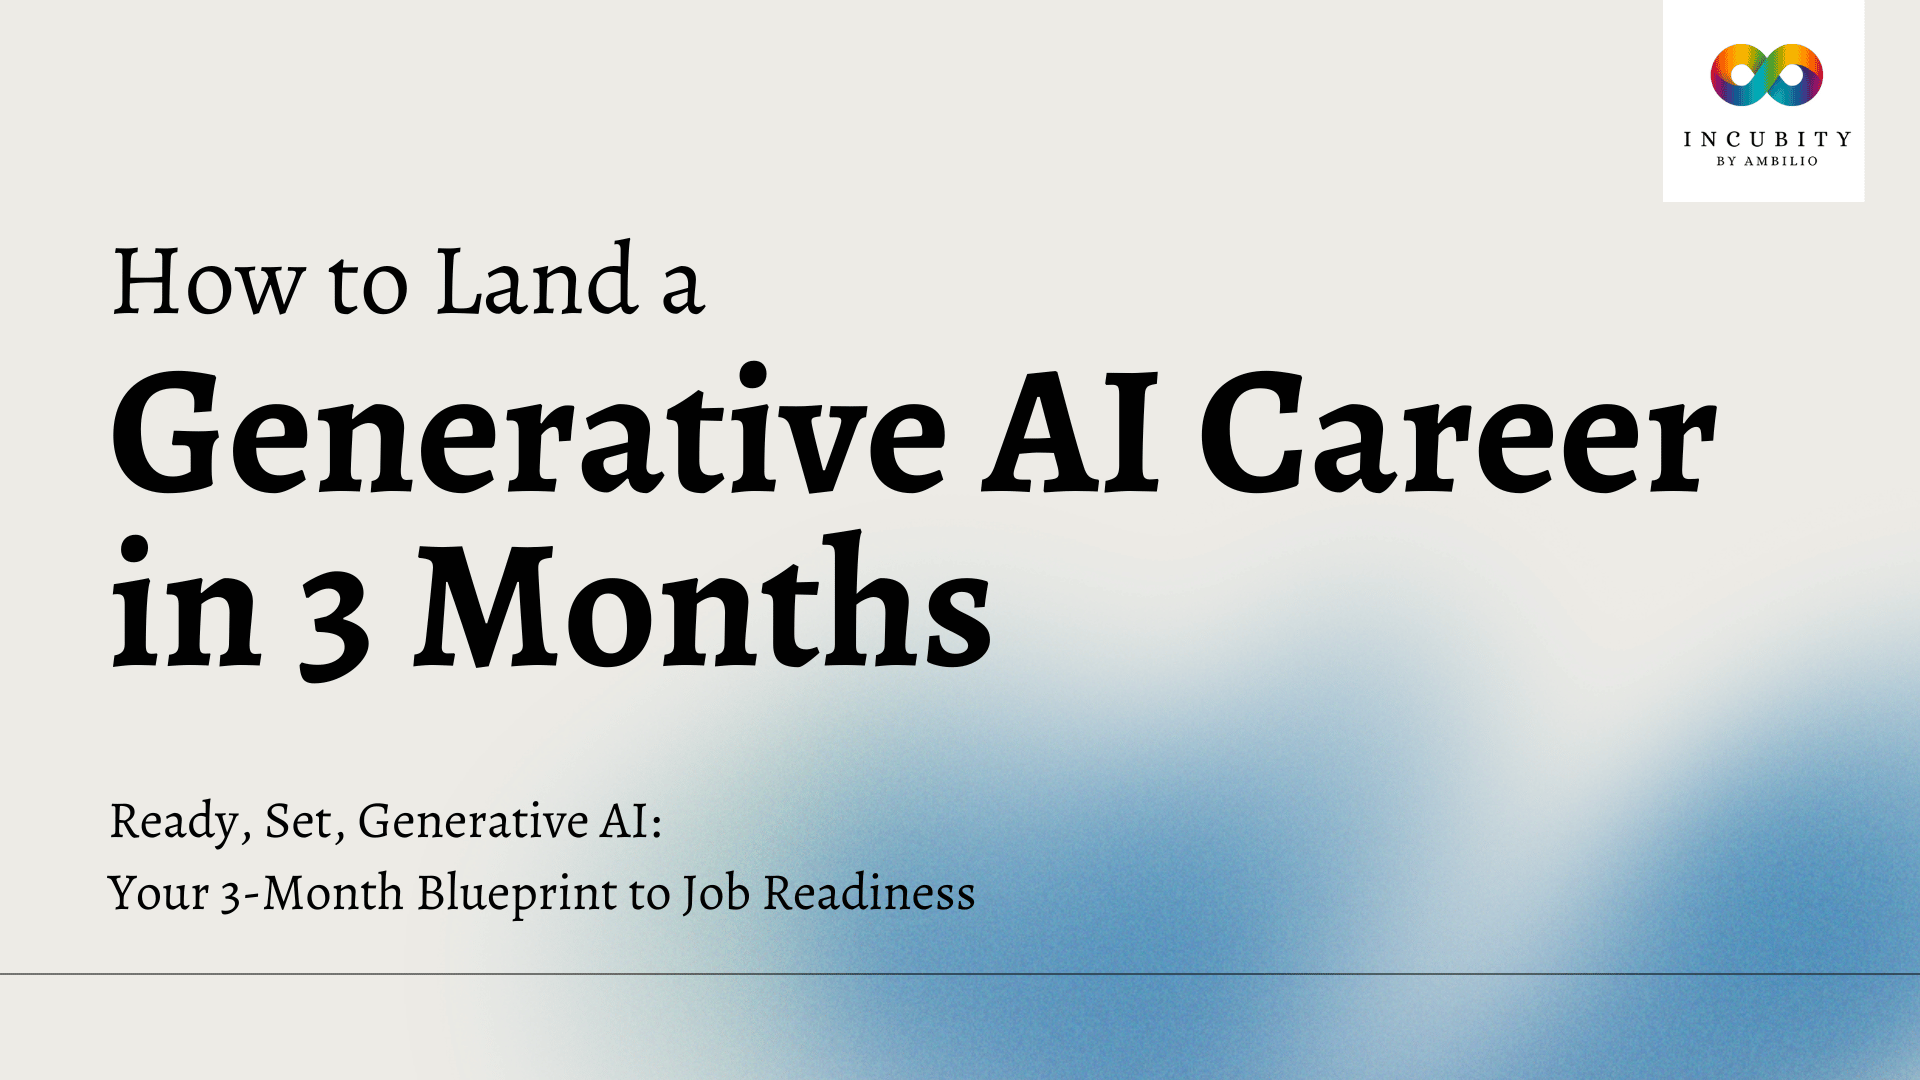 generative AI career